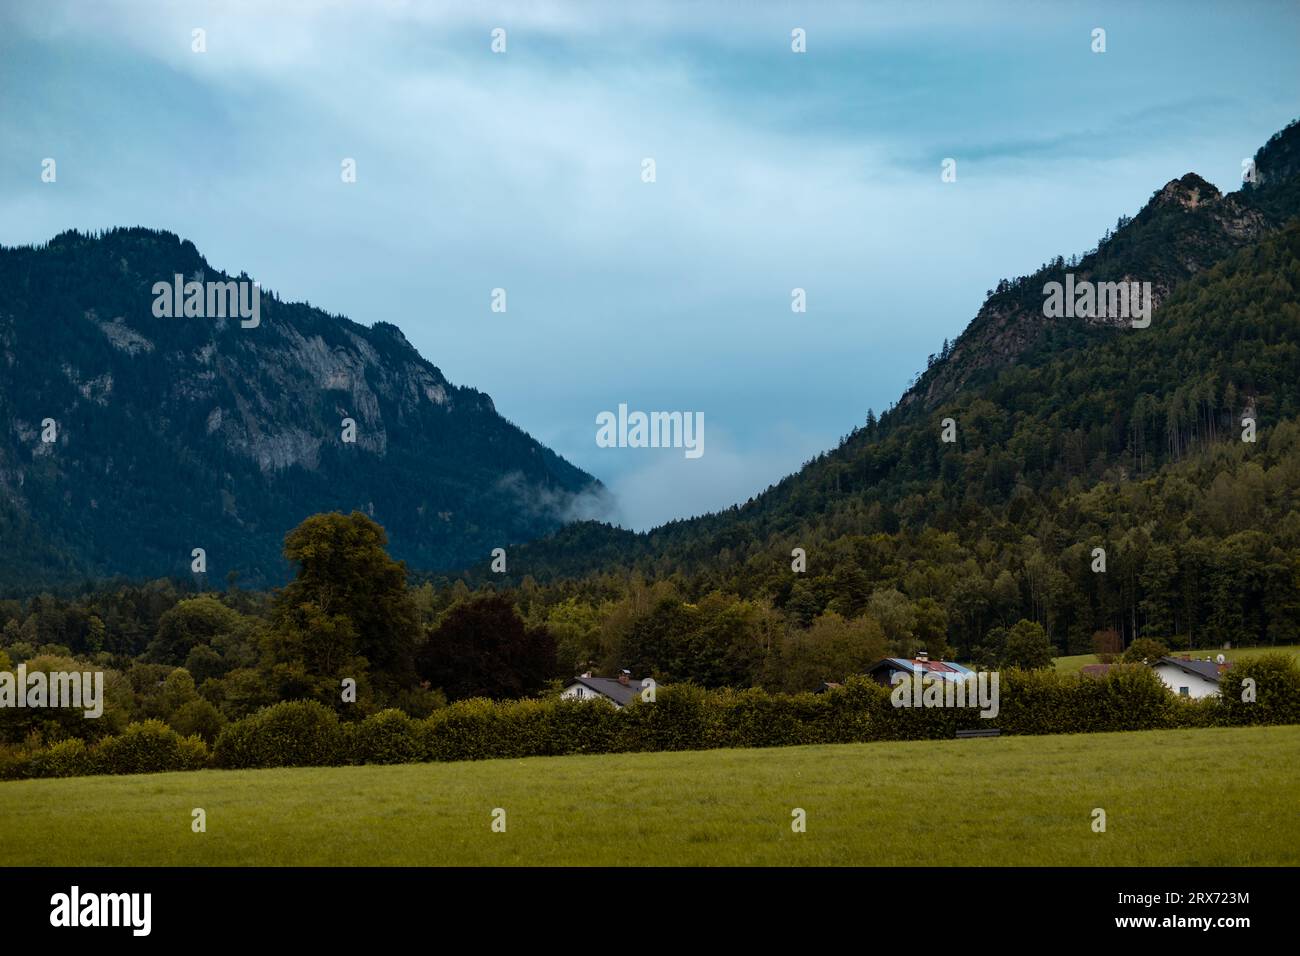 Nebelwolken zwischen den Bergen ziehen ins Tal. Regnerisches Wetter im deutschen Alpenraum. Wasserdampf aus dem Wald ist in der Luft. Stockfoto